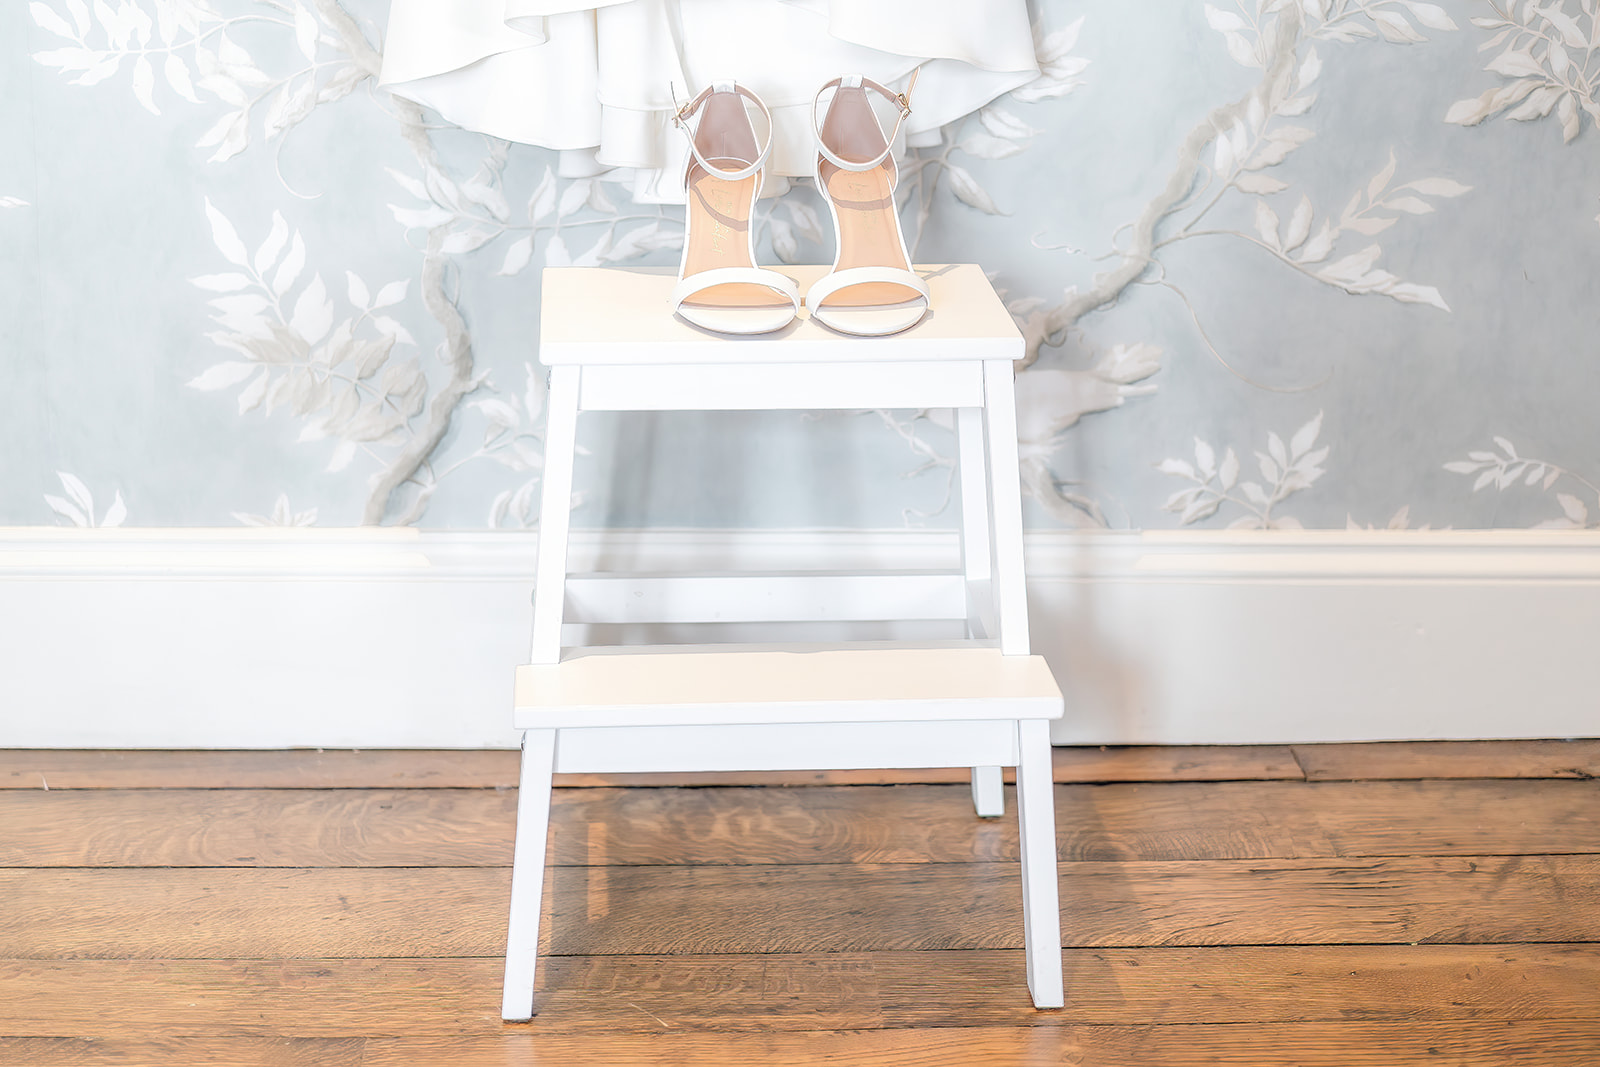 wedding shoes on stool